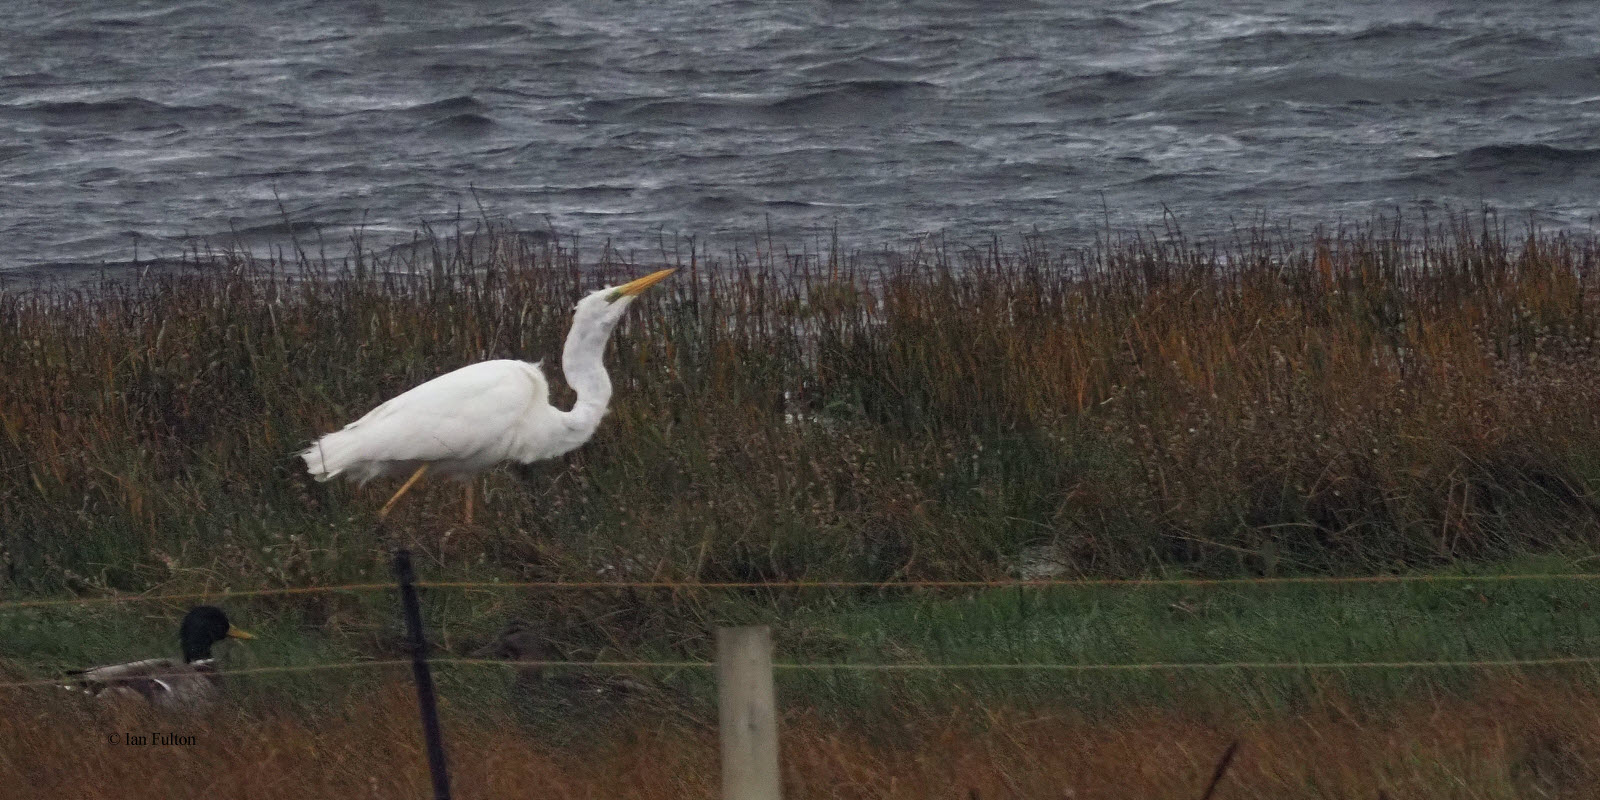 Great White Egret, Loch of Spiggie